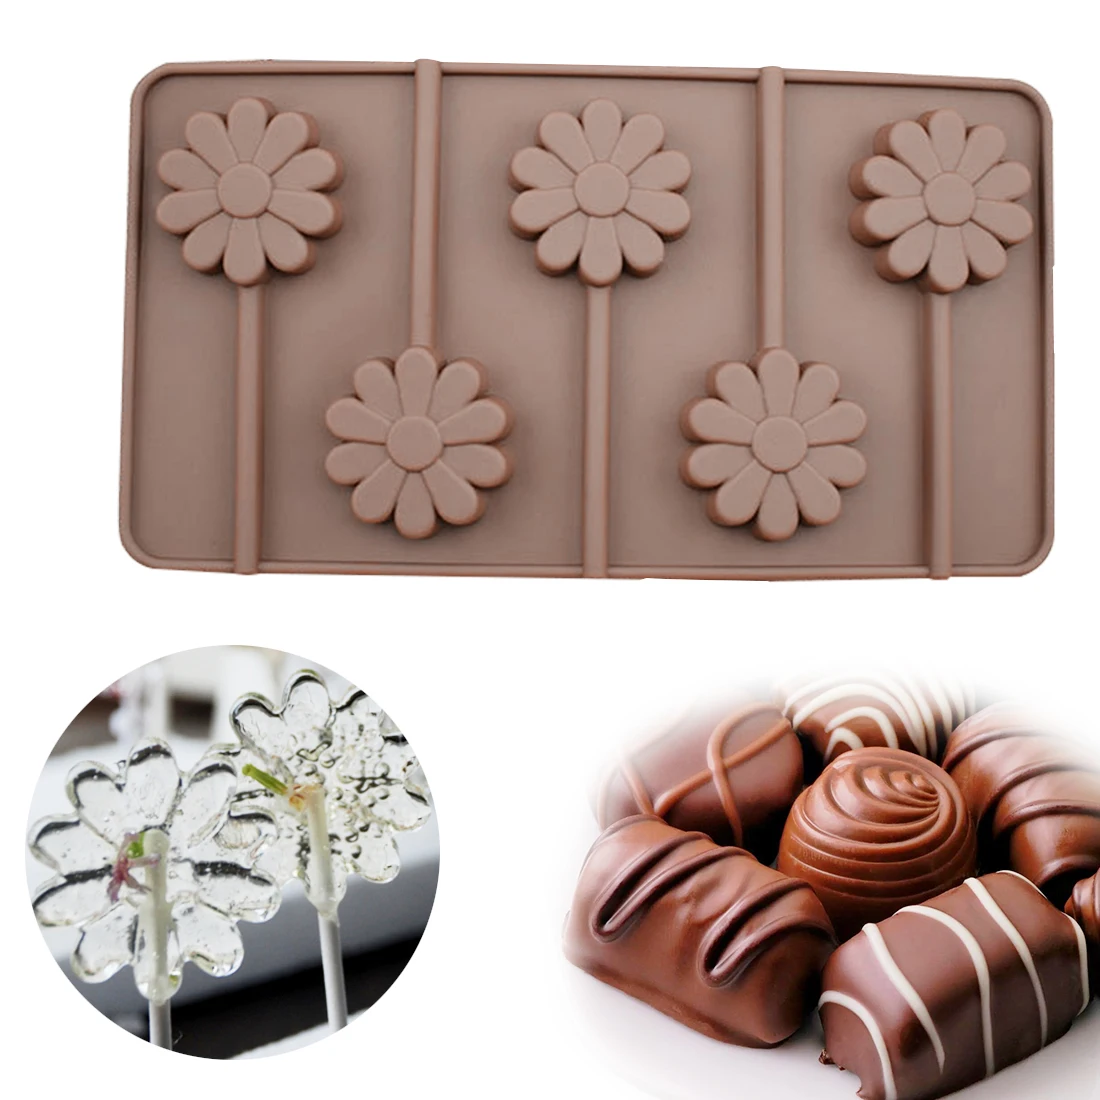 Лидер продаж 3D 5 отверстий цветок цветочный леденец Форма торт Шоколадный сахар плесень помадка трафареты украшения инструменты кухонные гаджеты